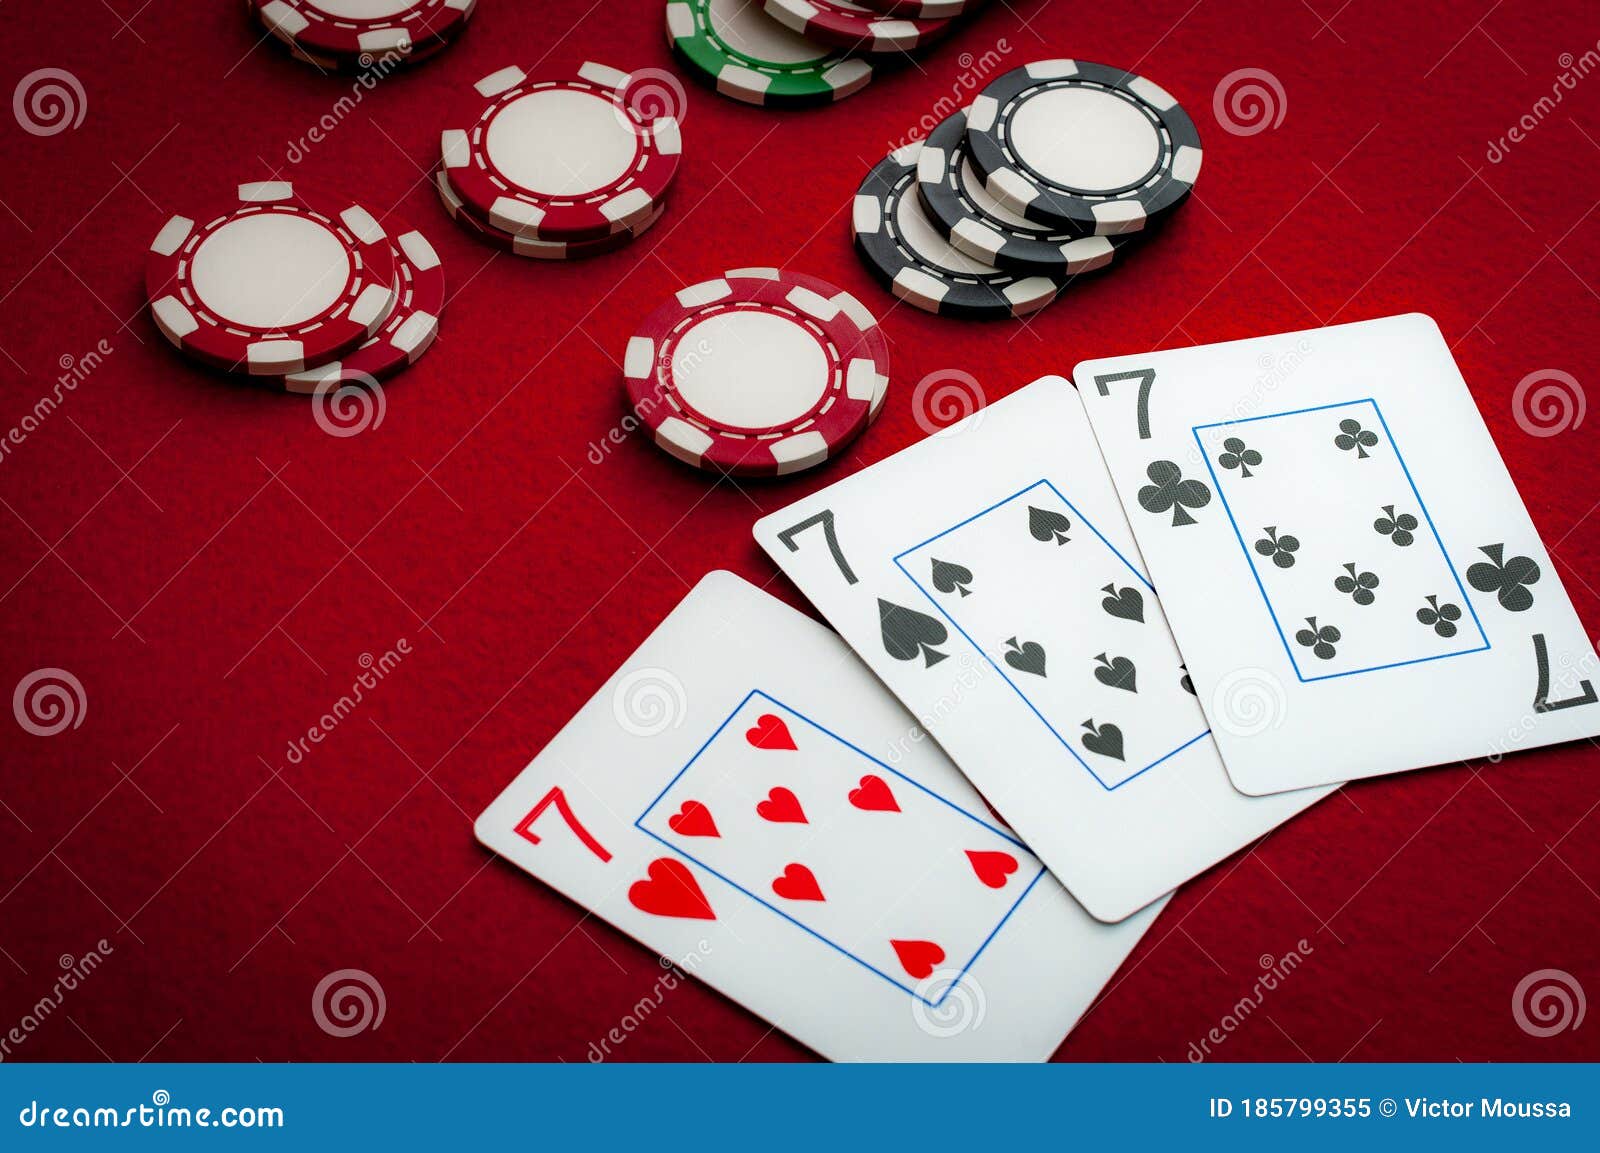 Os três tipos de Poker mais conhecidos